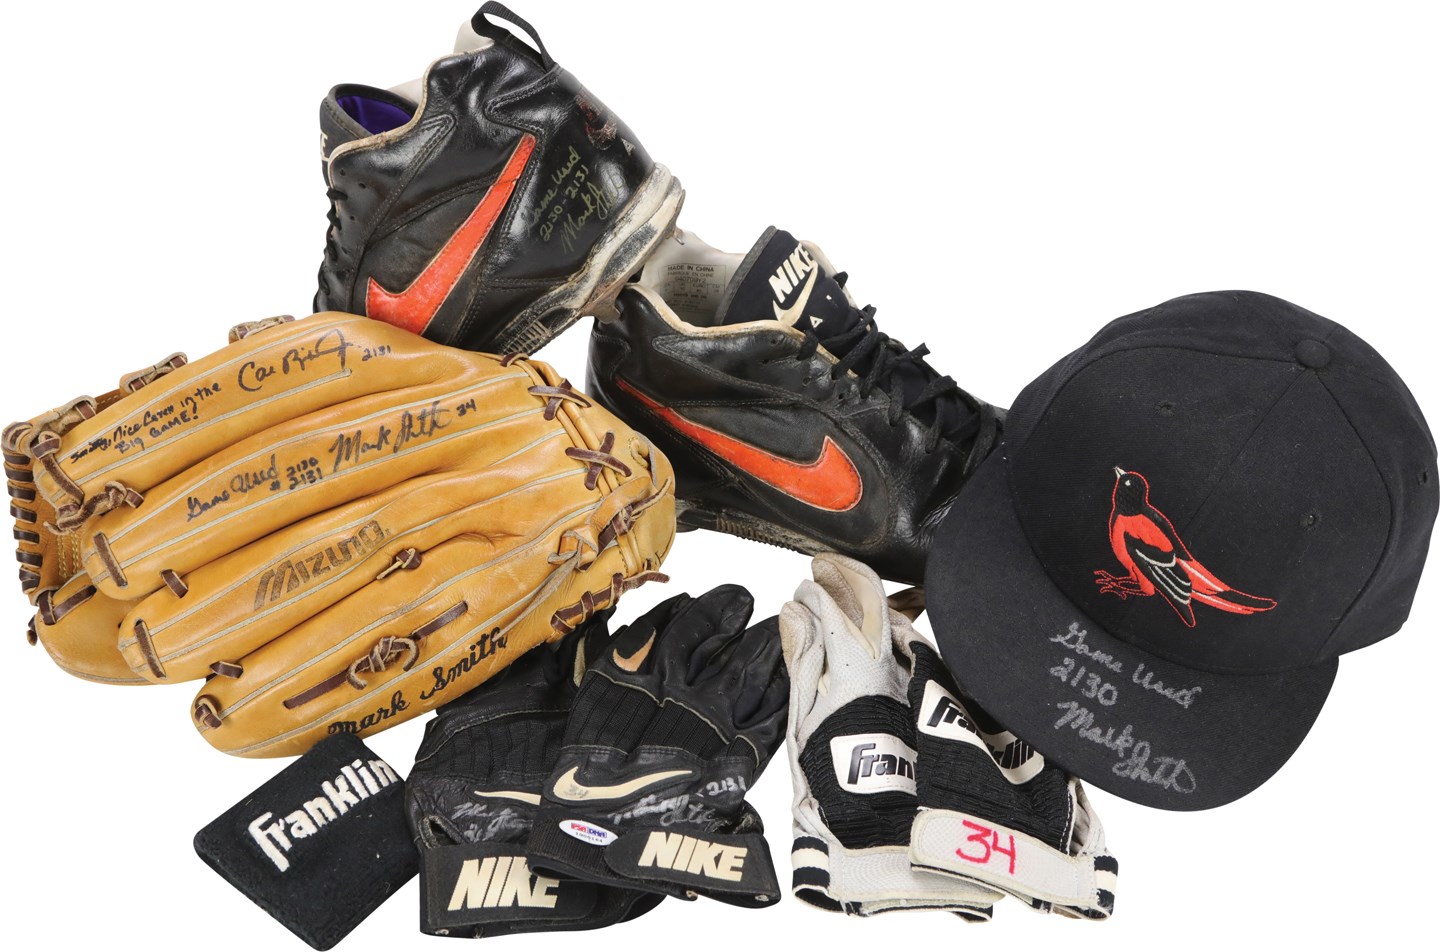 Baseball Equipment - 1995 Mark Smith Baltimore Orioles Game Worn Items from Cal Ripken Jr. 2,130-2,131 Games